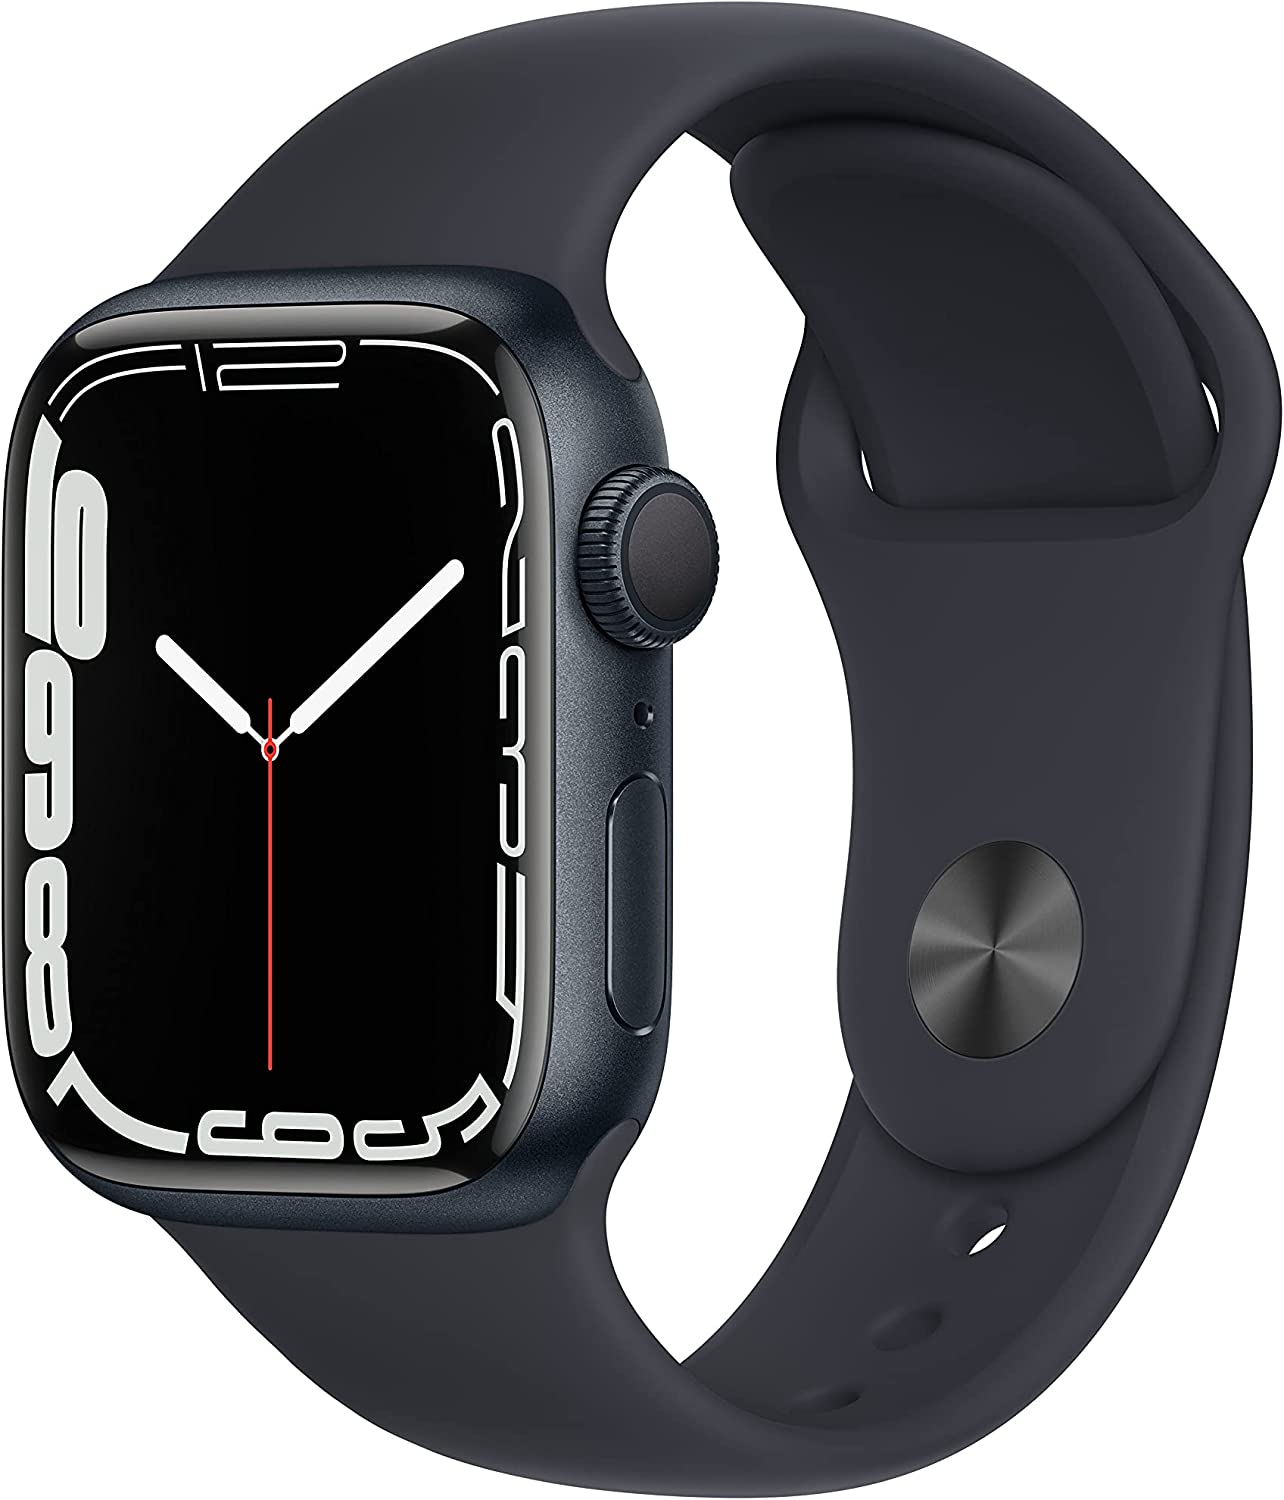 Apple Watch Series 7 vs Apple Watch SE